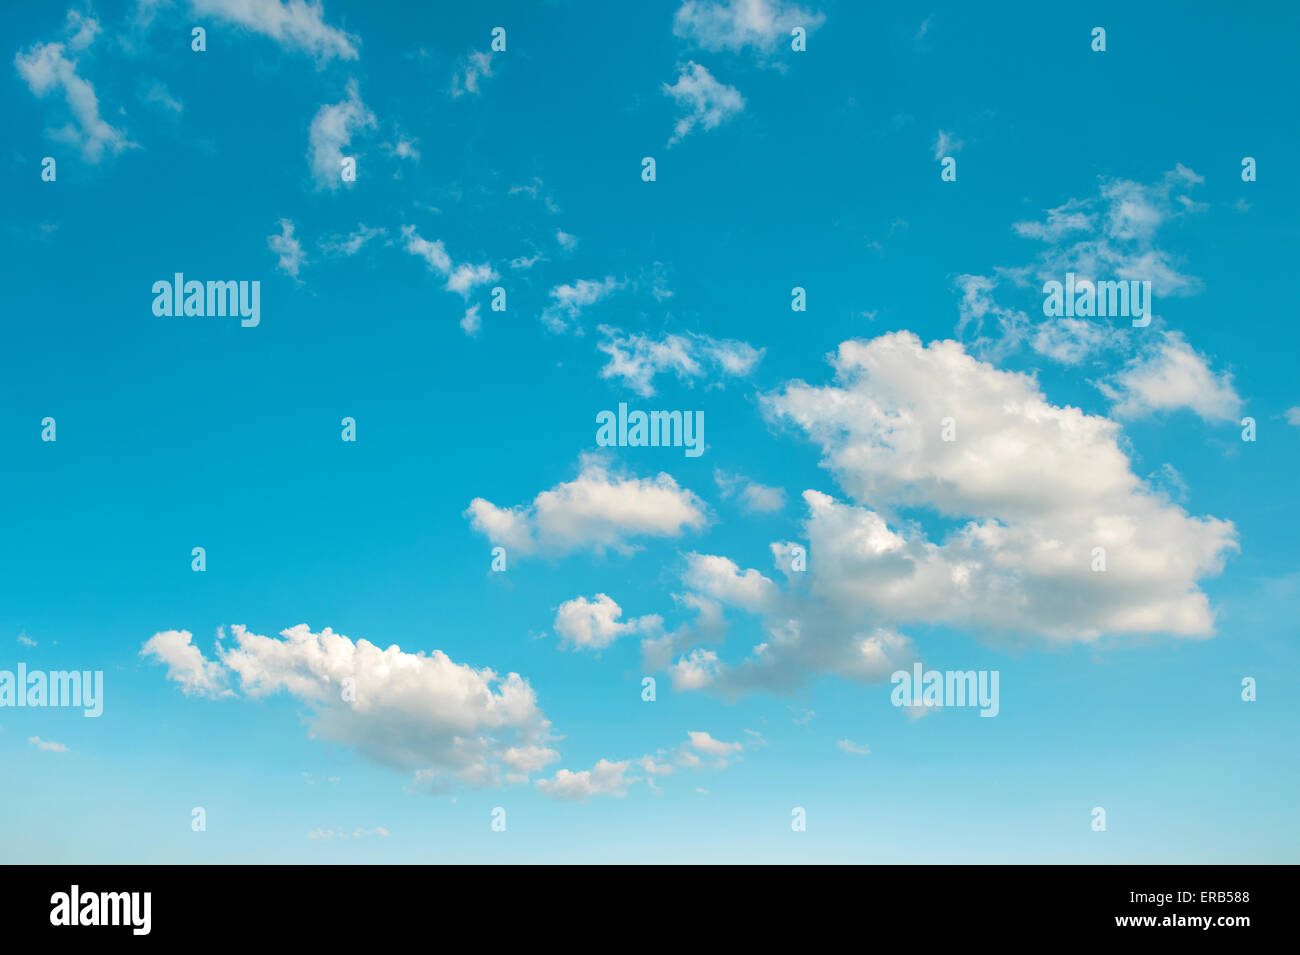 Türkis blauer Himmel mit weißen Wolken. Natur-Hintergrund. Umwelt-Konzept Stockfoto